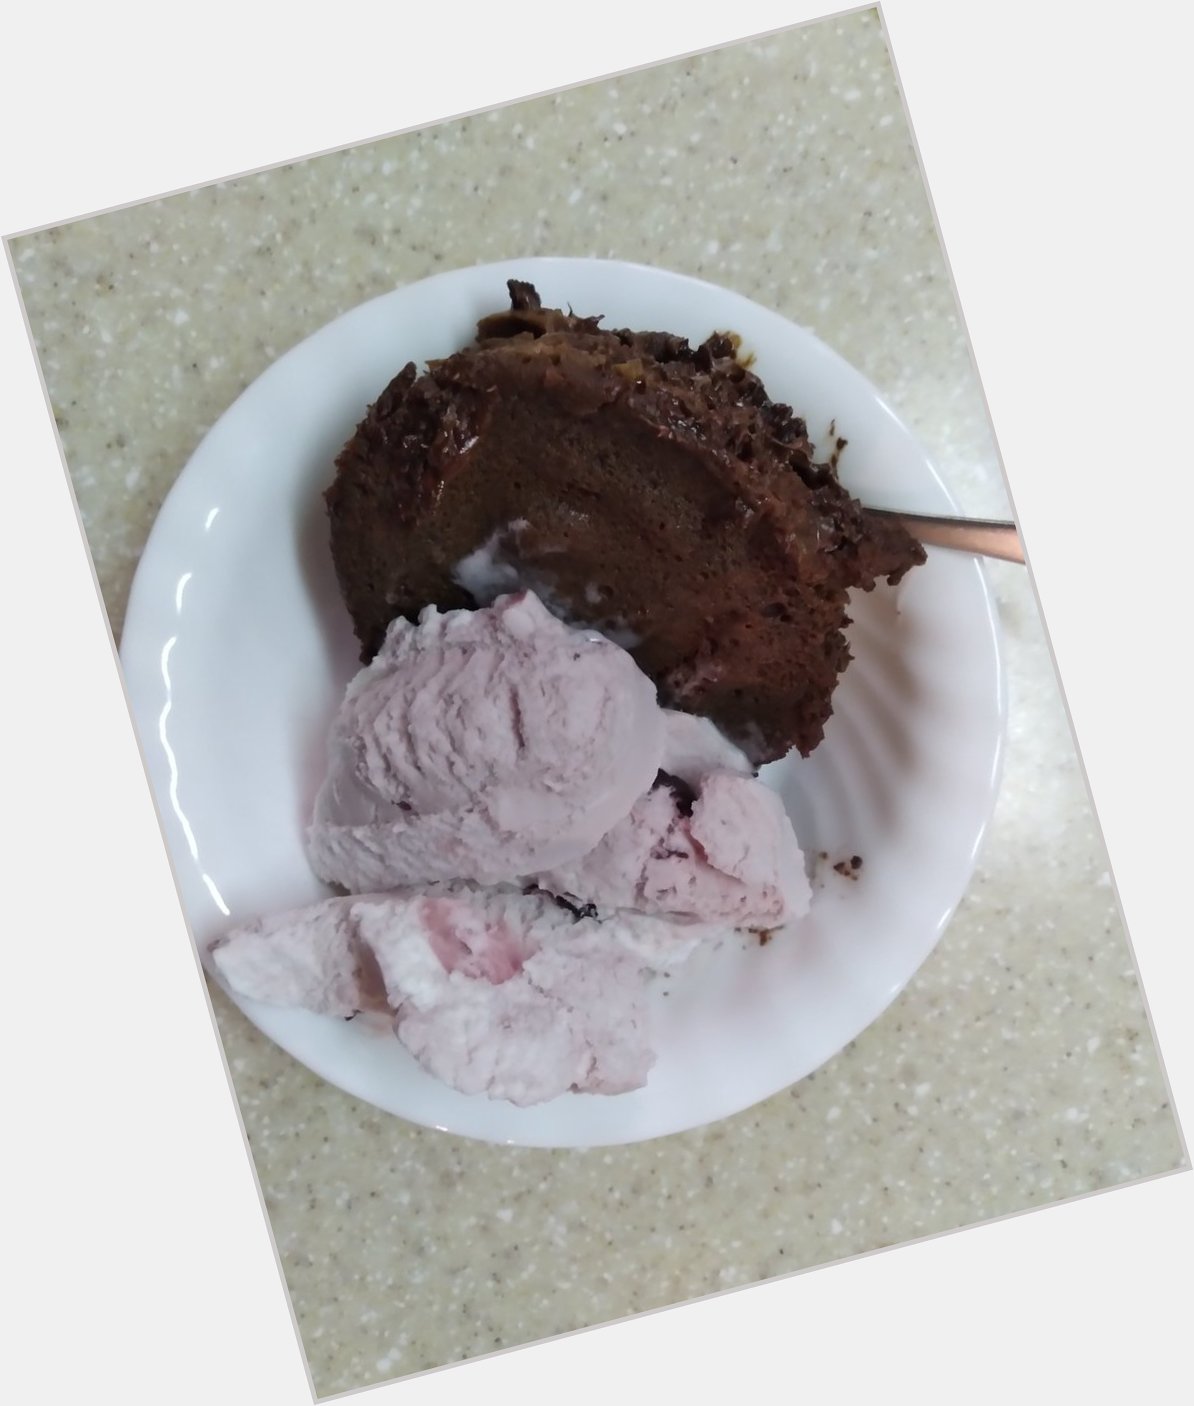  Happy birthday Elara, here\s your chocolate cake with cherry vanilla ice cream 